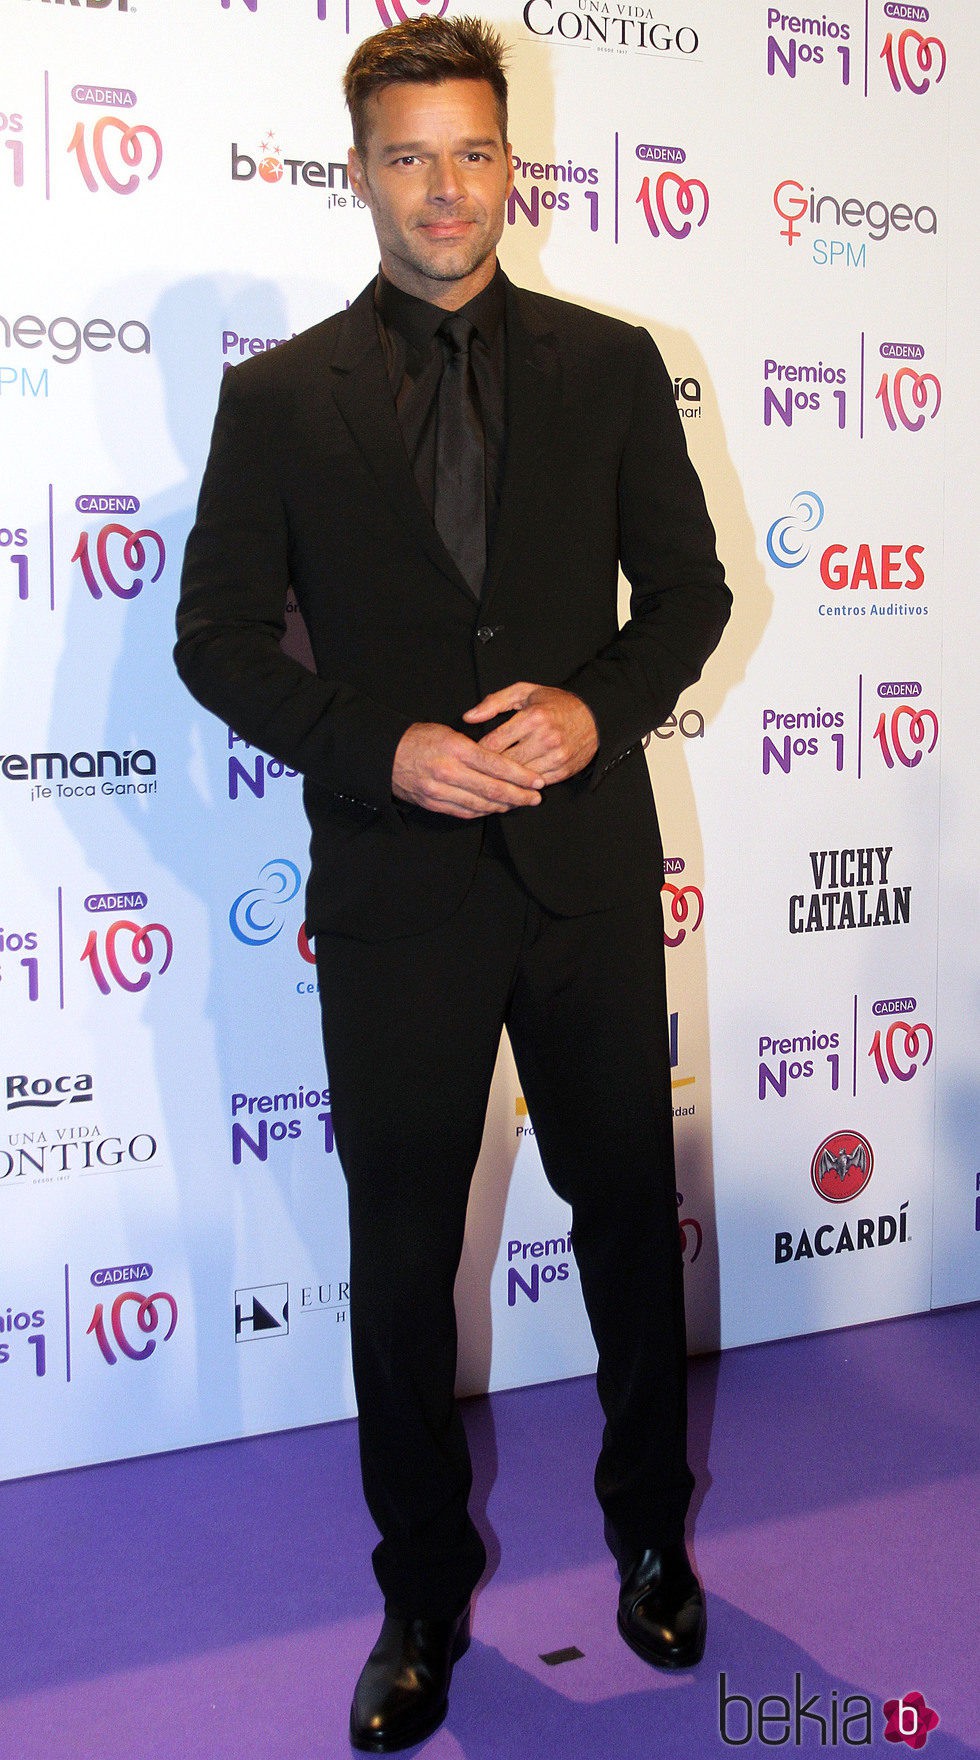 Ricky Martin en la entrega de los Premios Nos 1 de Cadena 100